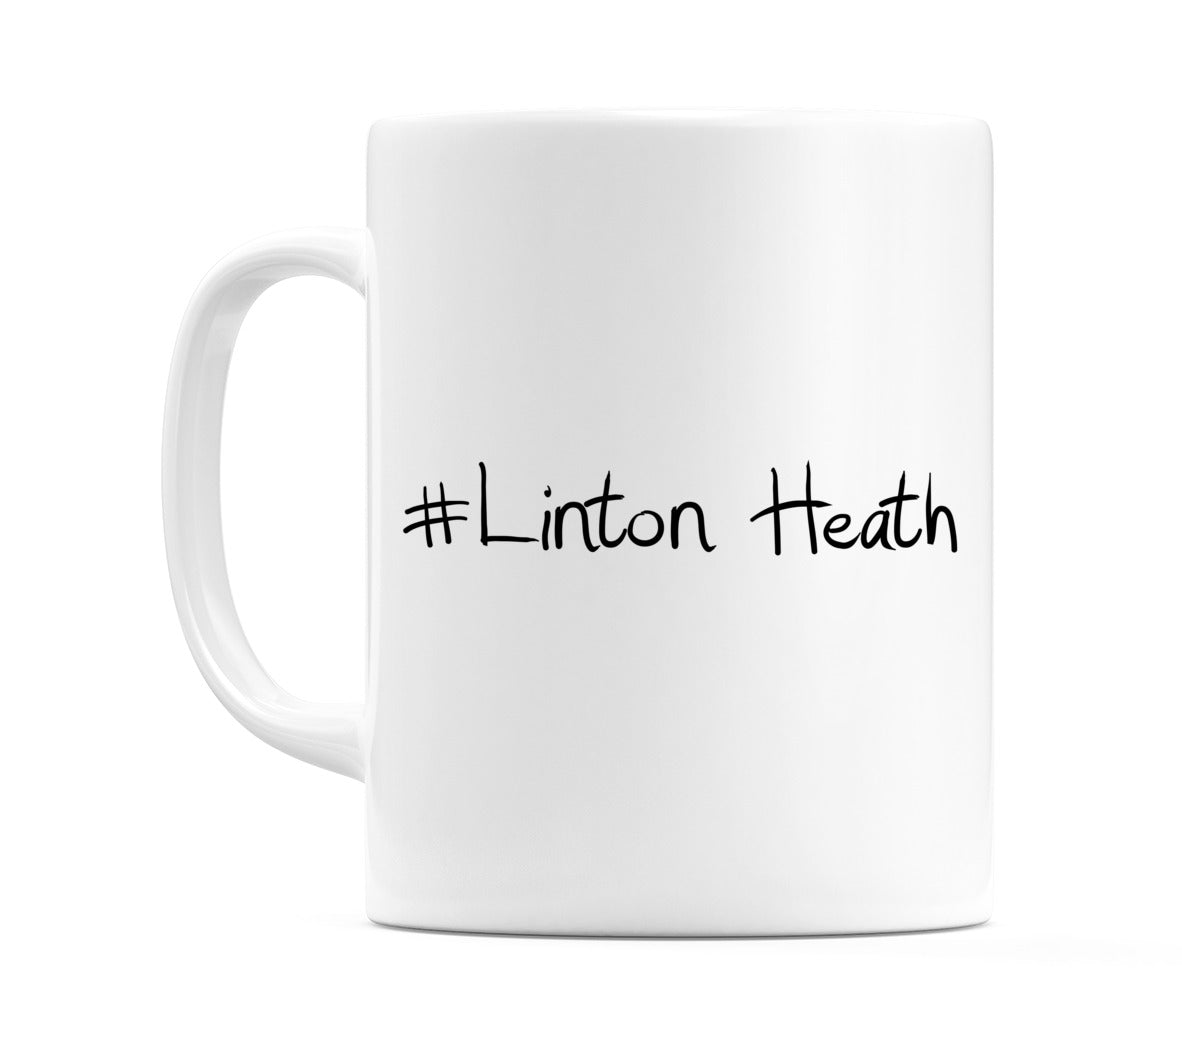 #Linton Heath Mug